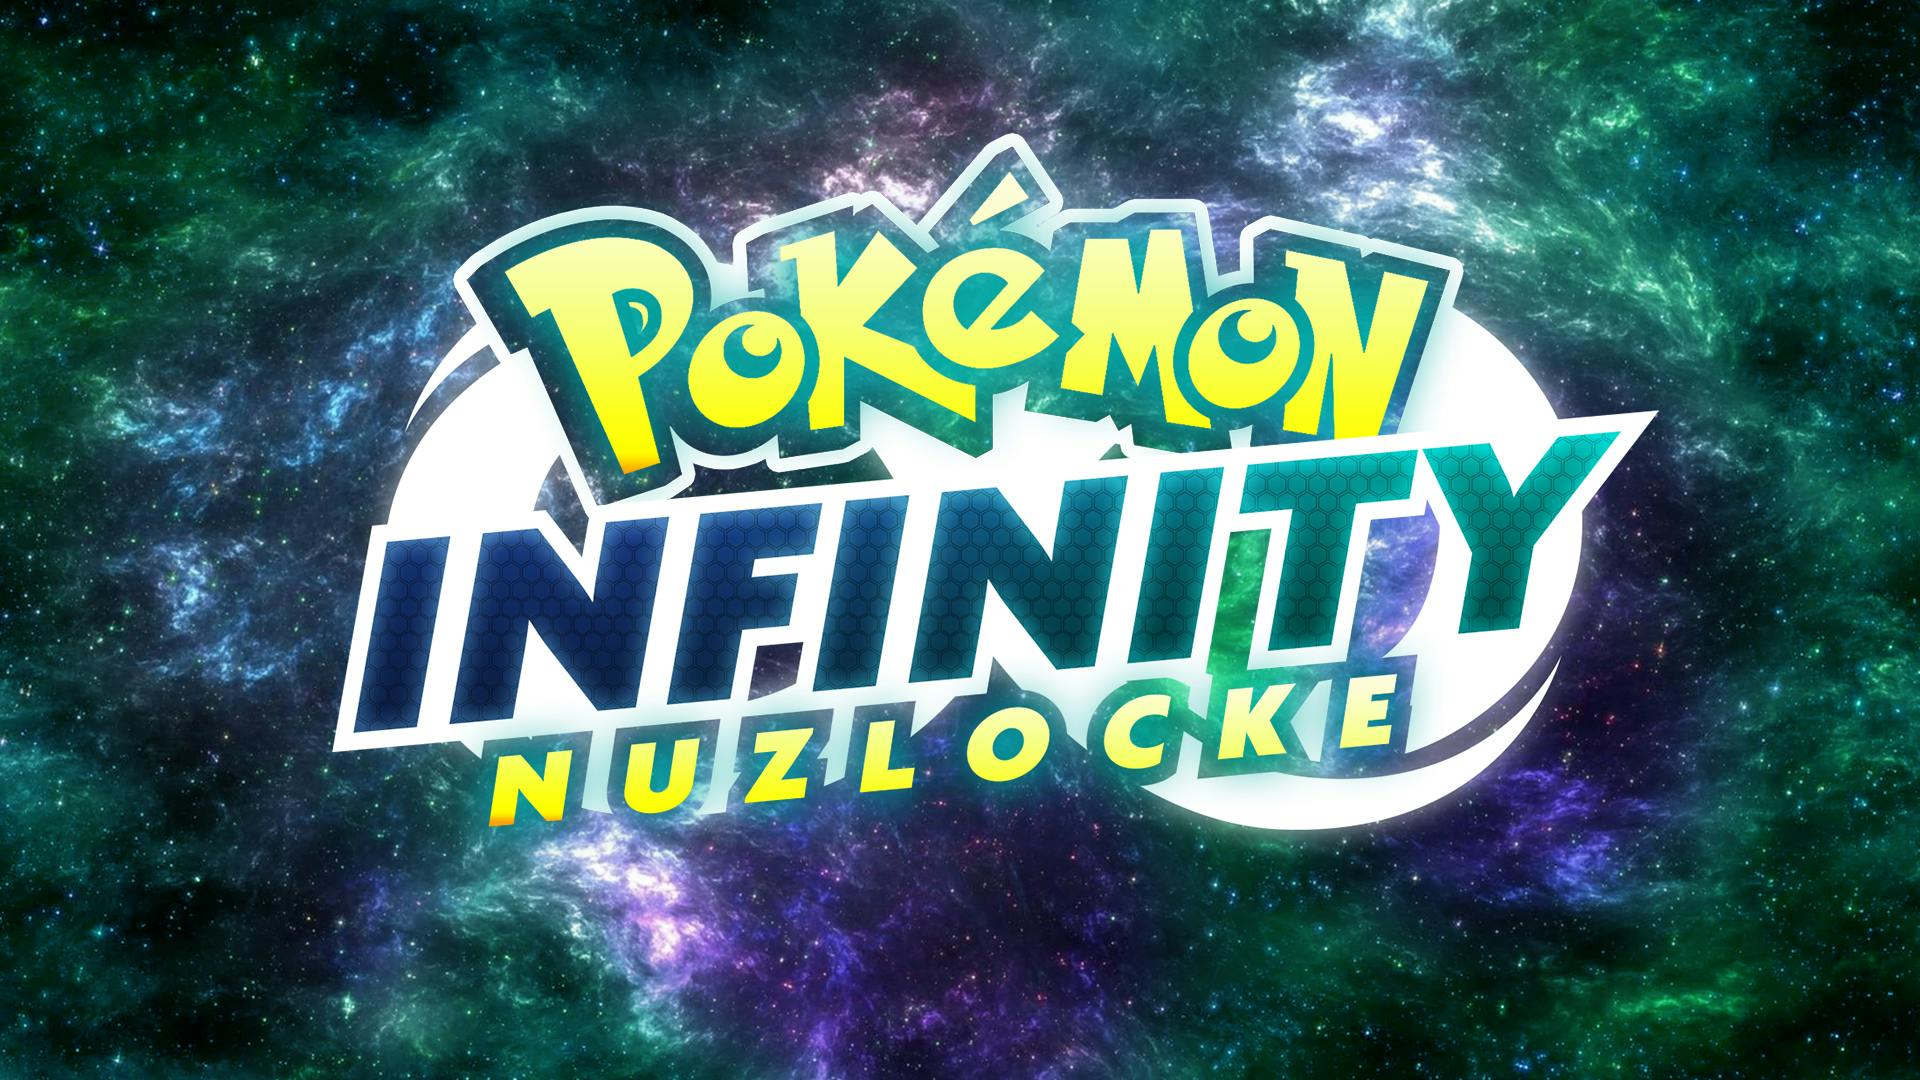 Pokemon Infinity Nuzlocke! Banner Image